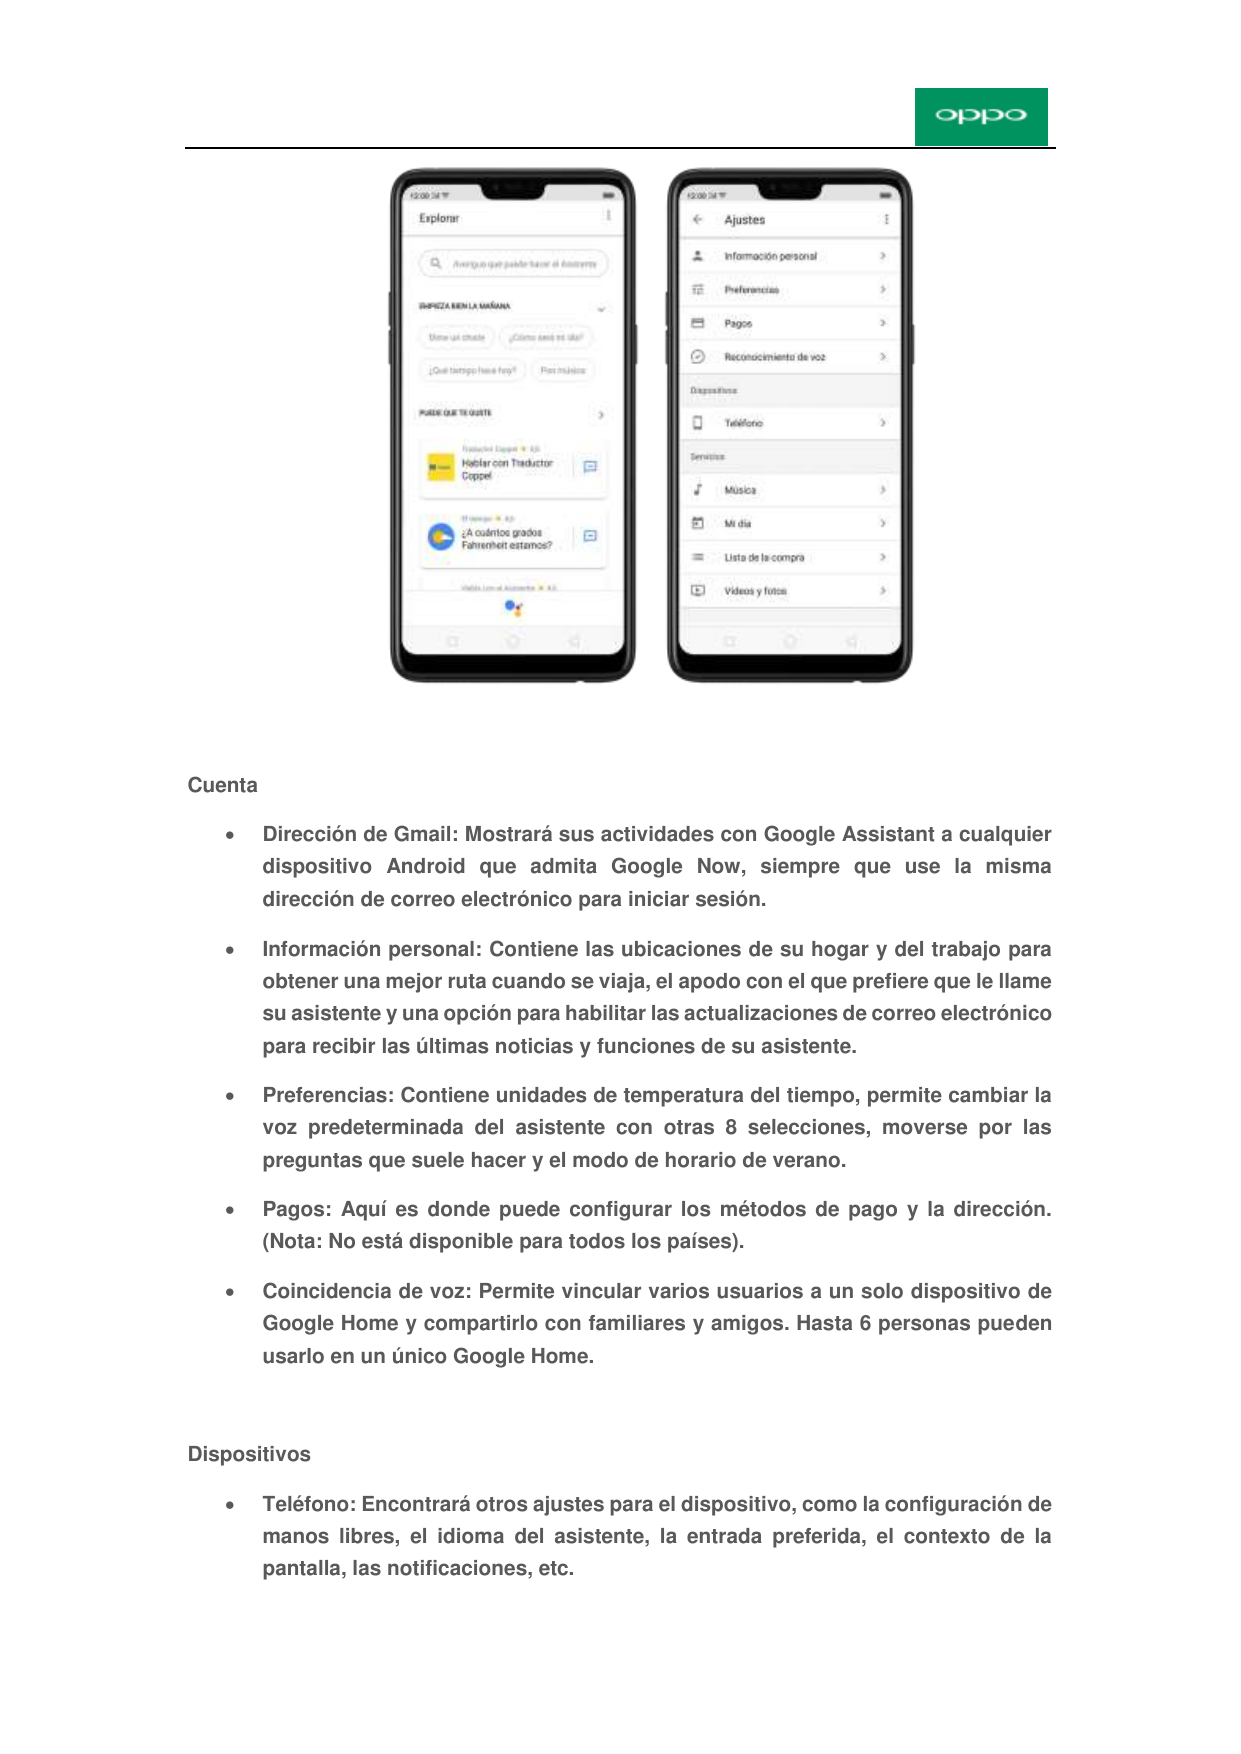 CuentaDirección de Gmail: Mostrará sus actividades con Google Assistant a cualquierdispositivo Android que admita Google Now, s